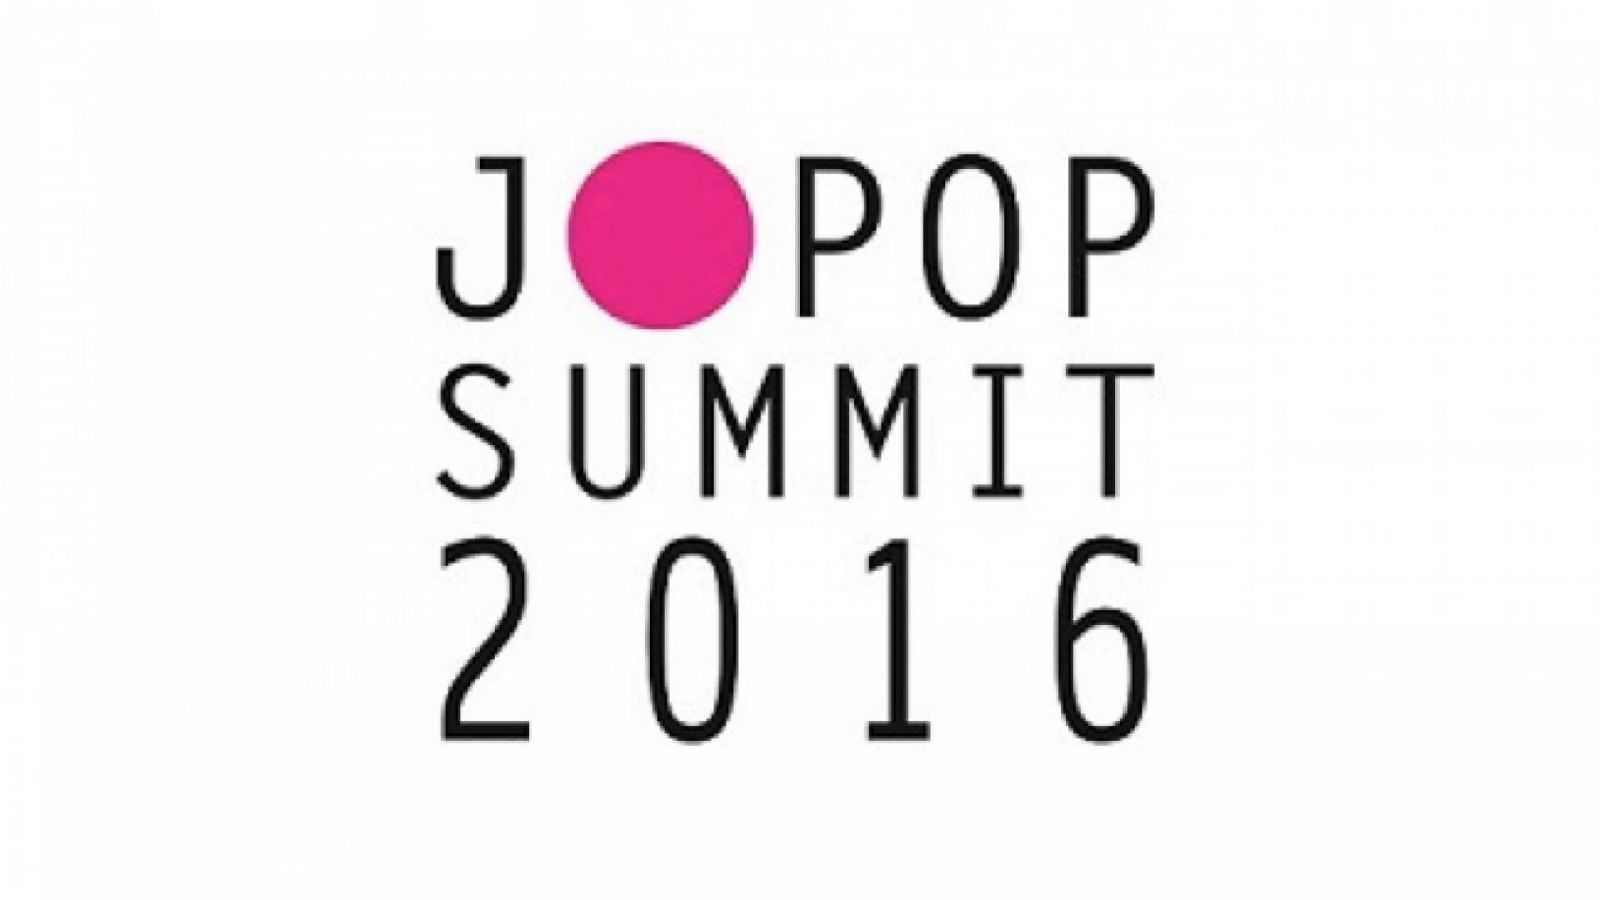 J-POP SUMMIT 2016 © J-POP SUMMIT 2016